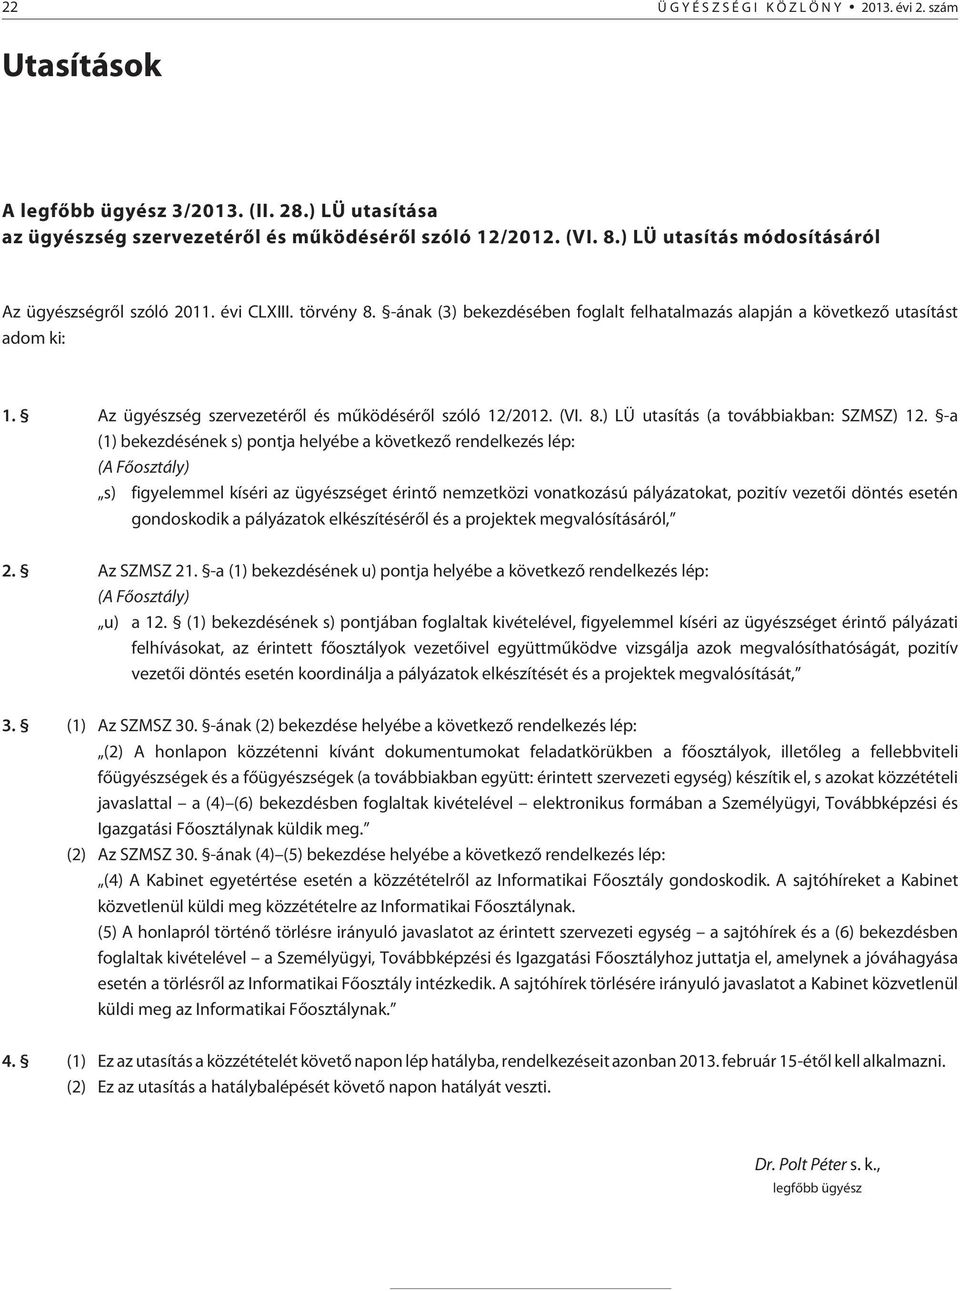 Az ügyészség szervezetérõl és mûködésérõl szóló 12/2012. (VI. 8.) LÜ utasítás (a továbbiakban: SZMSZ) 12.